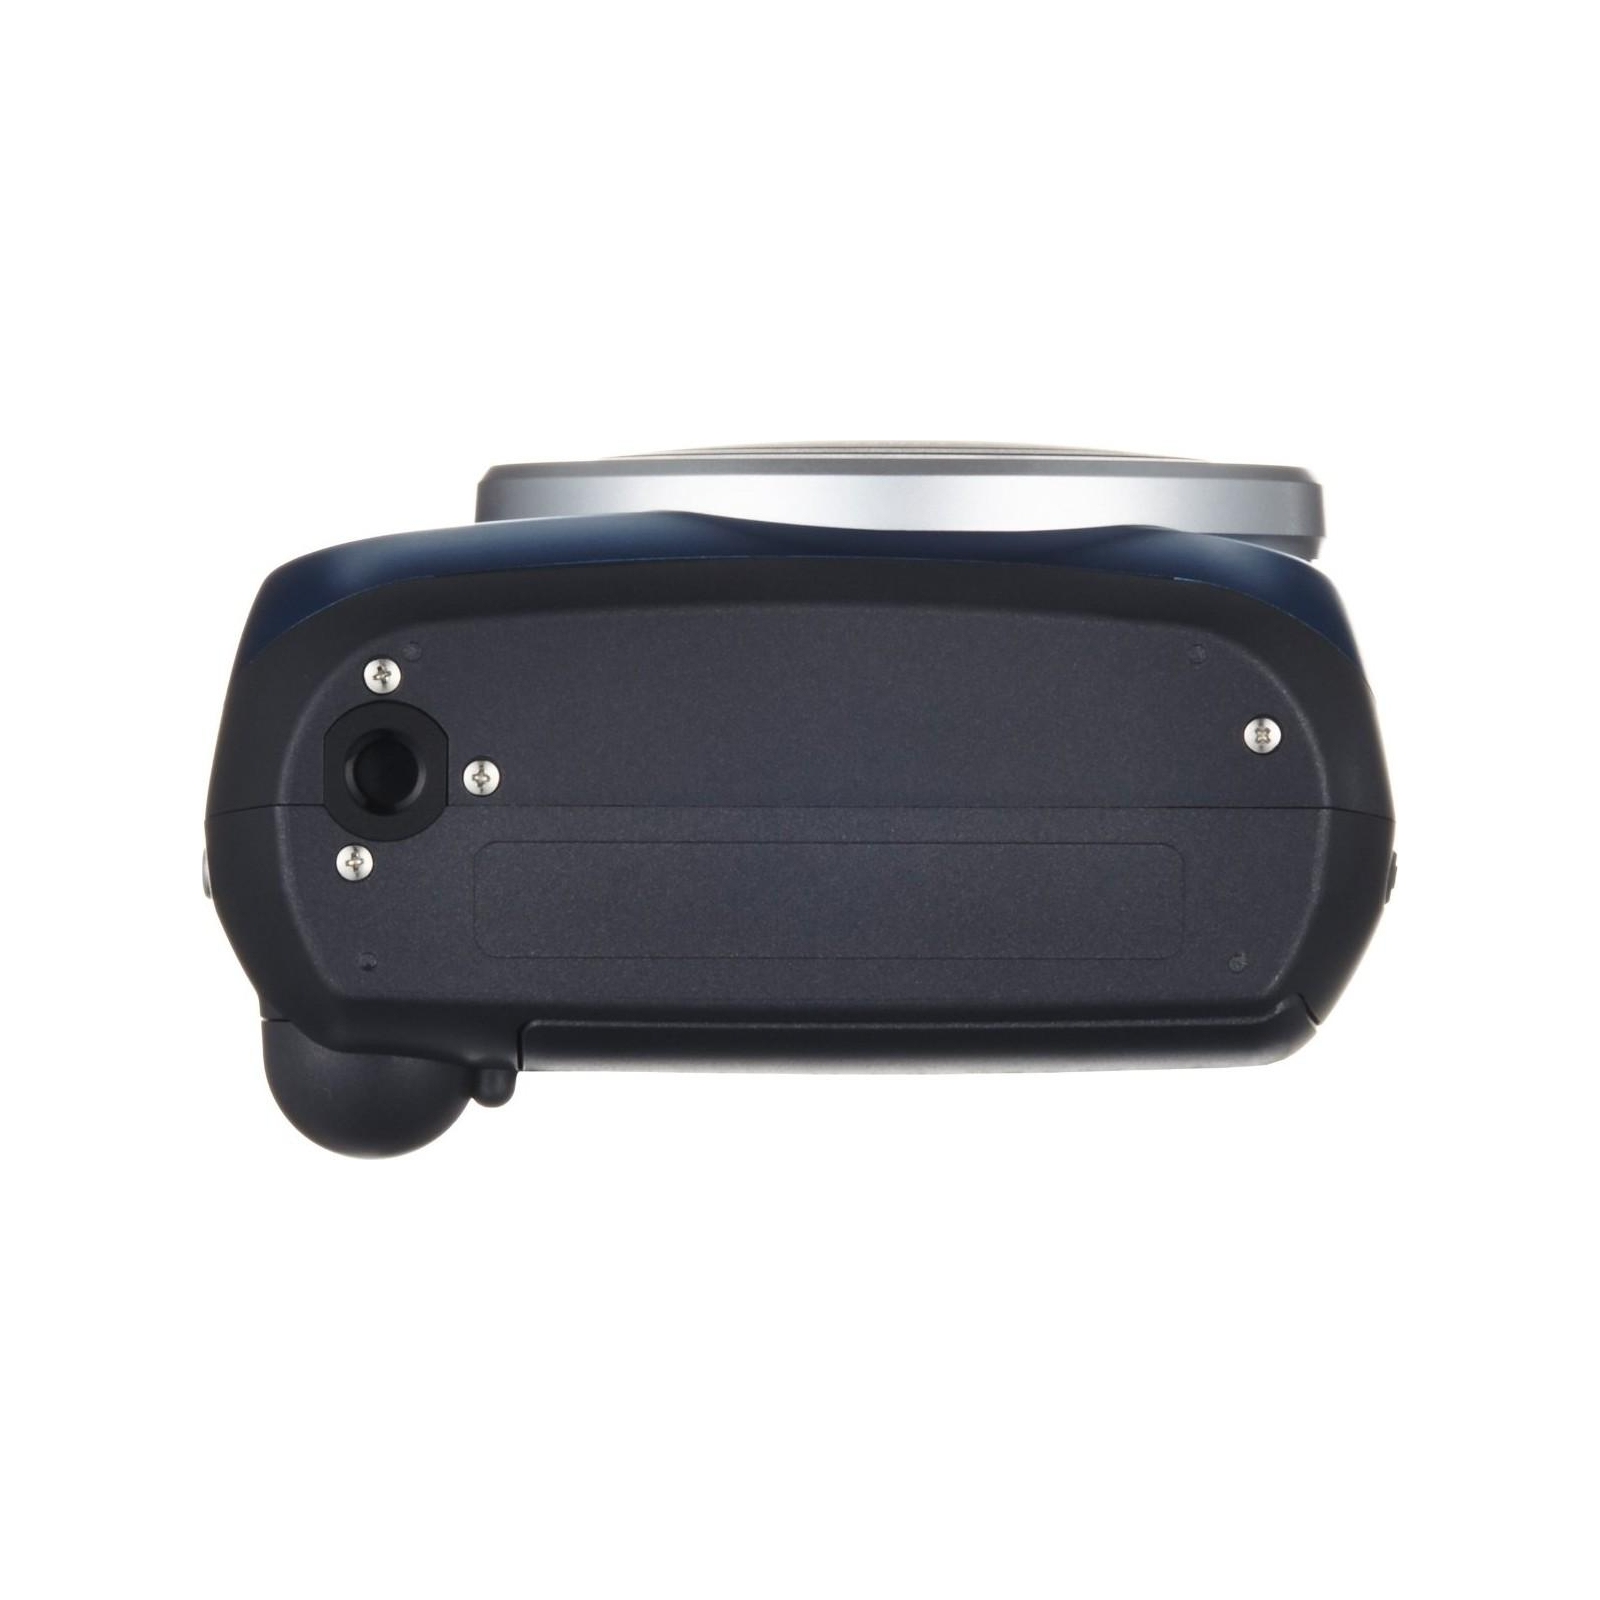 Камера моментальной печати Fujifilm Instax Mini 70 Blue EX D (16496079) изображение 8